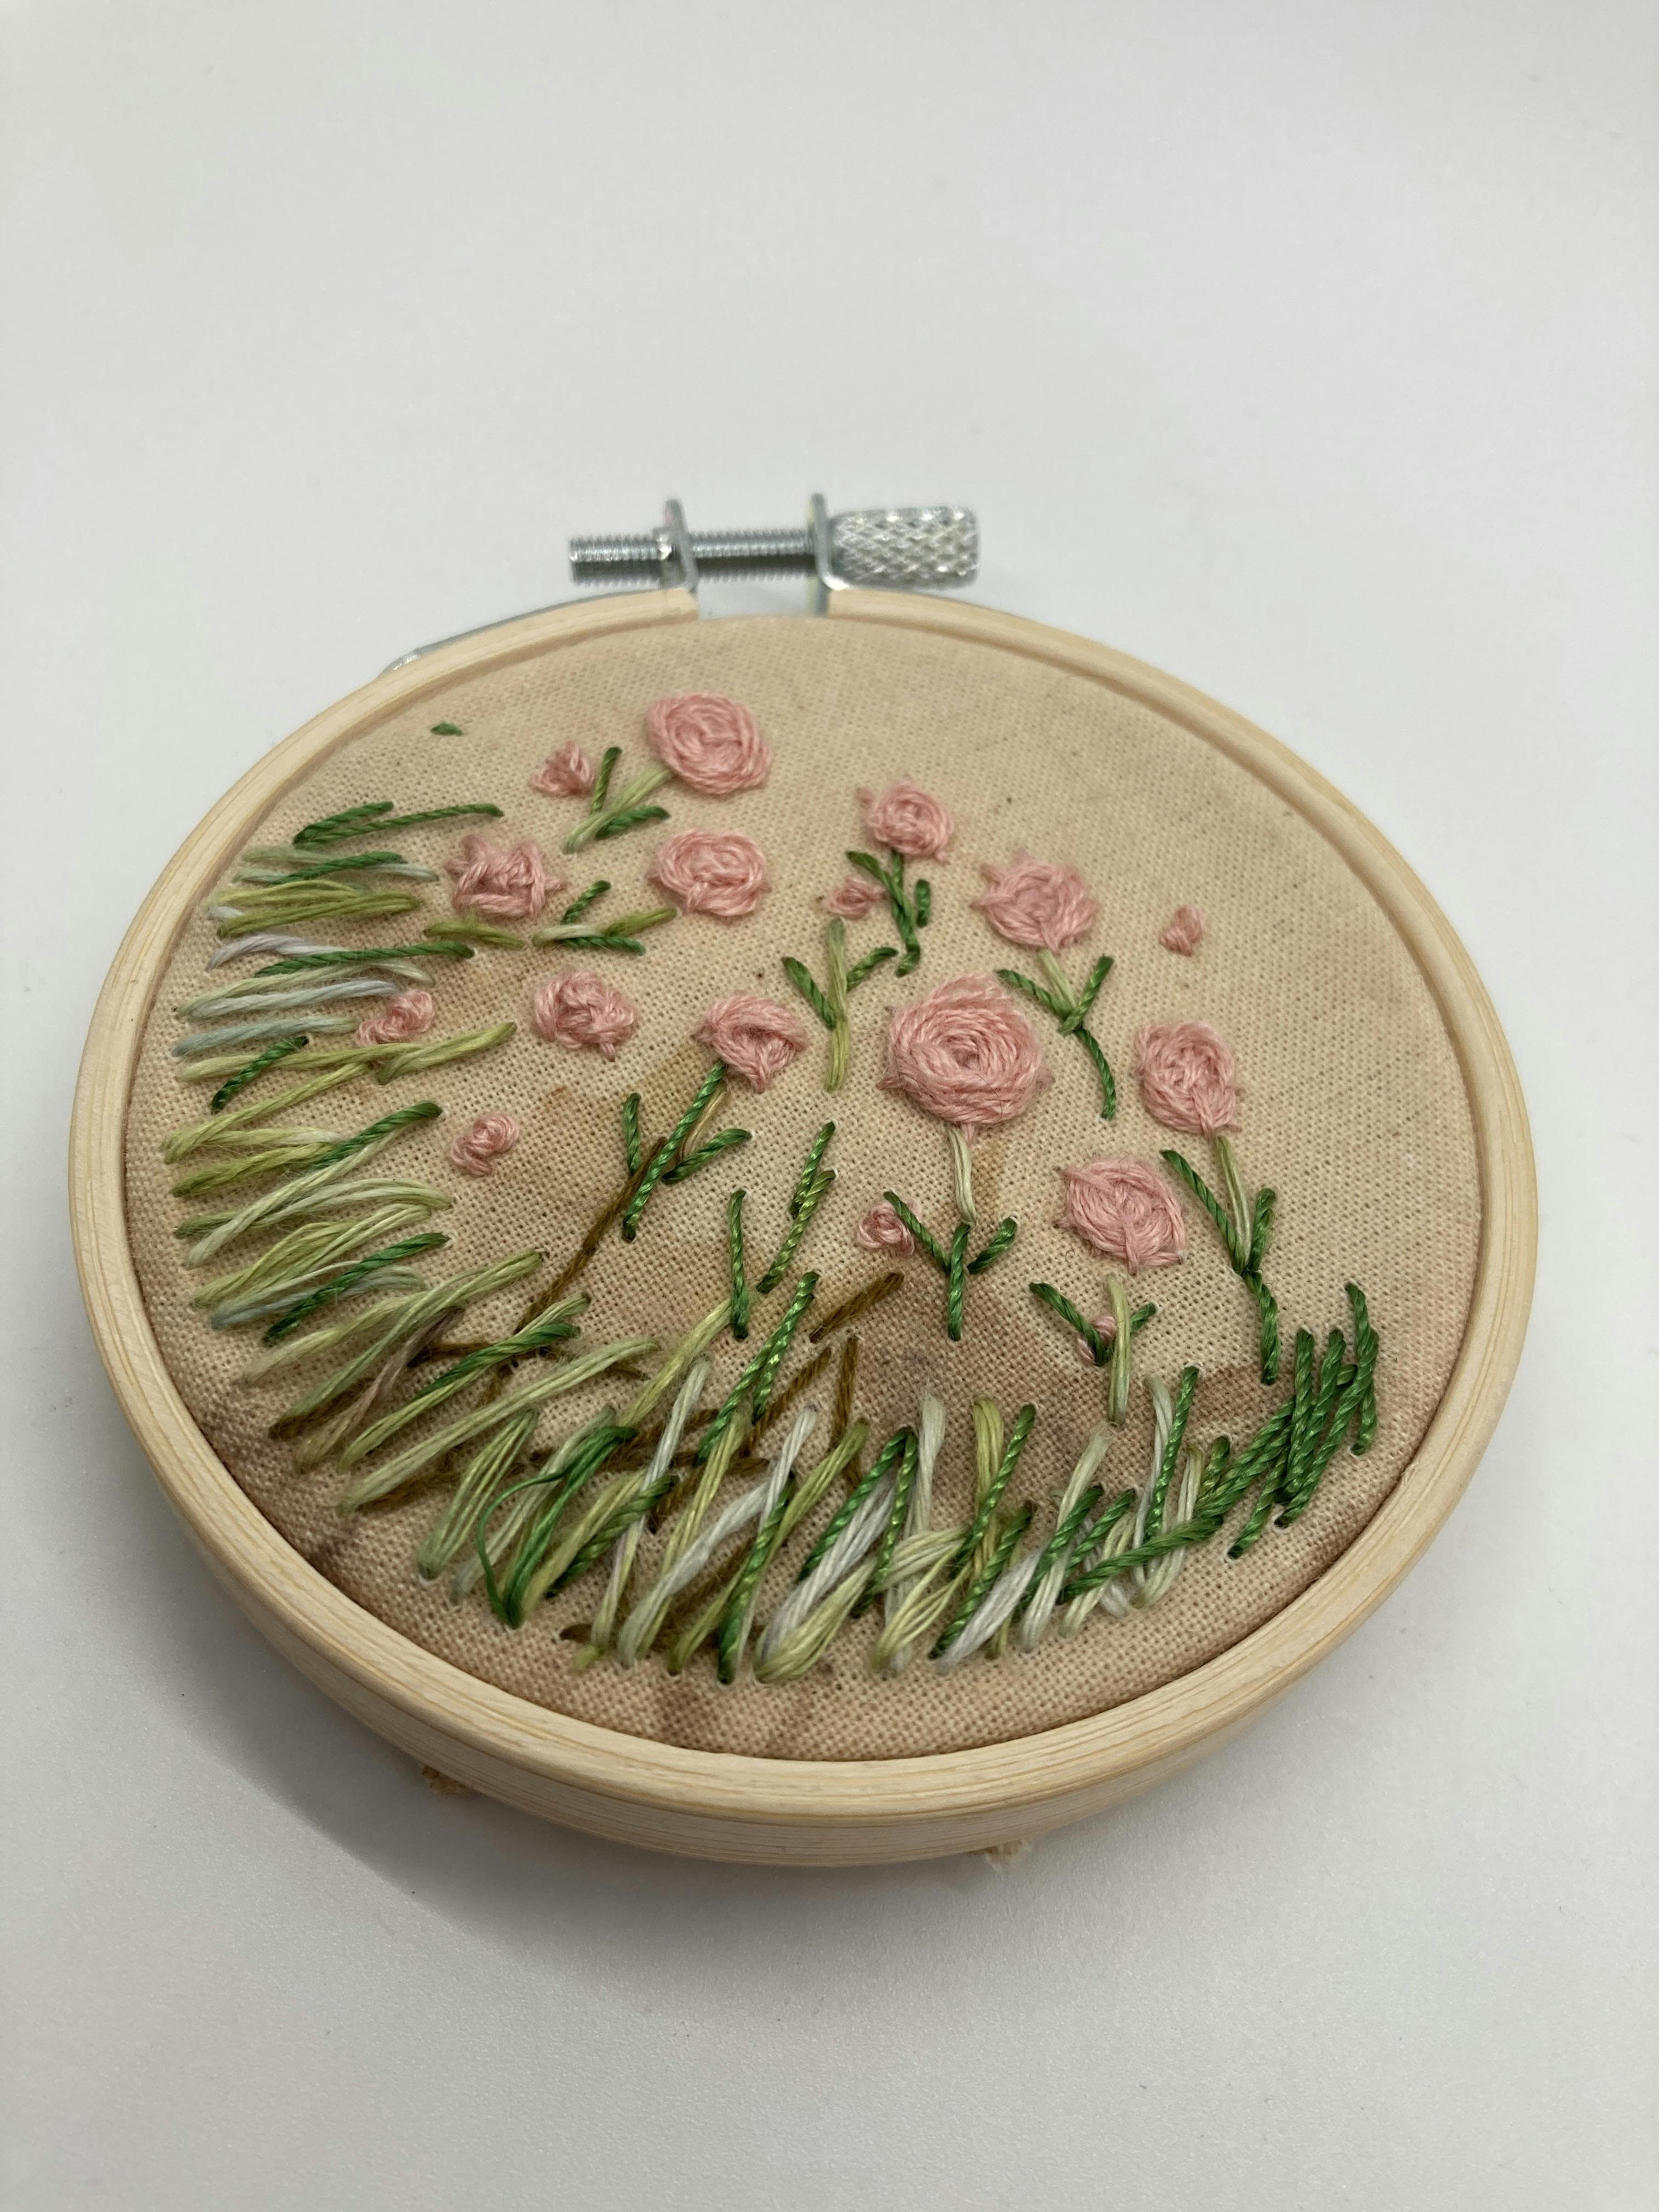 Embroidery of flowers in hoop